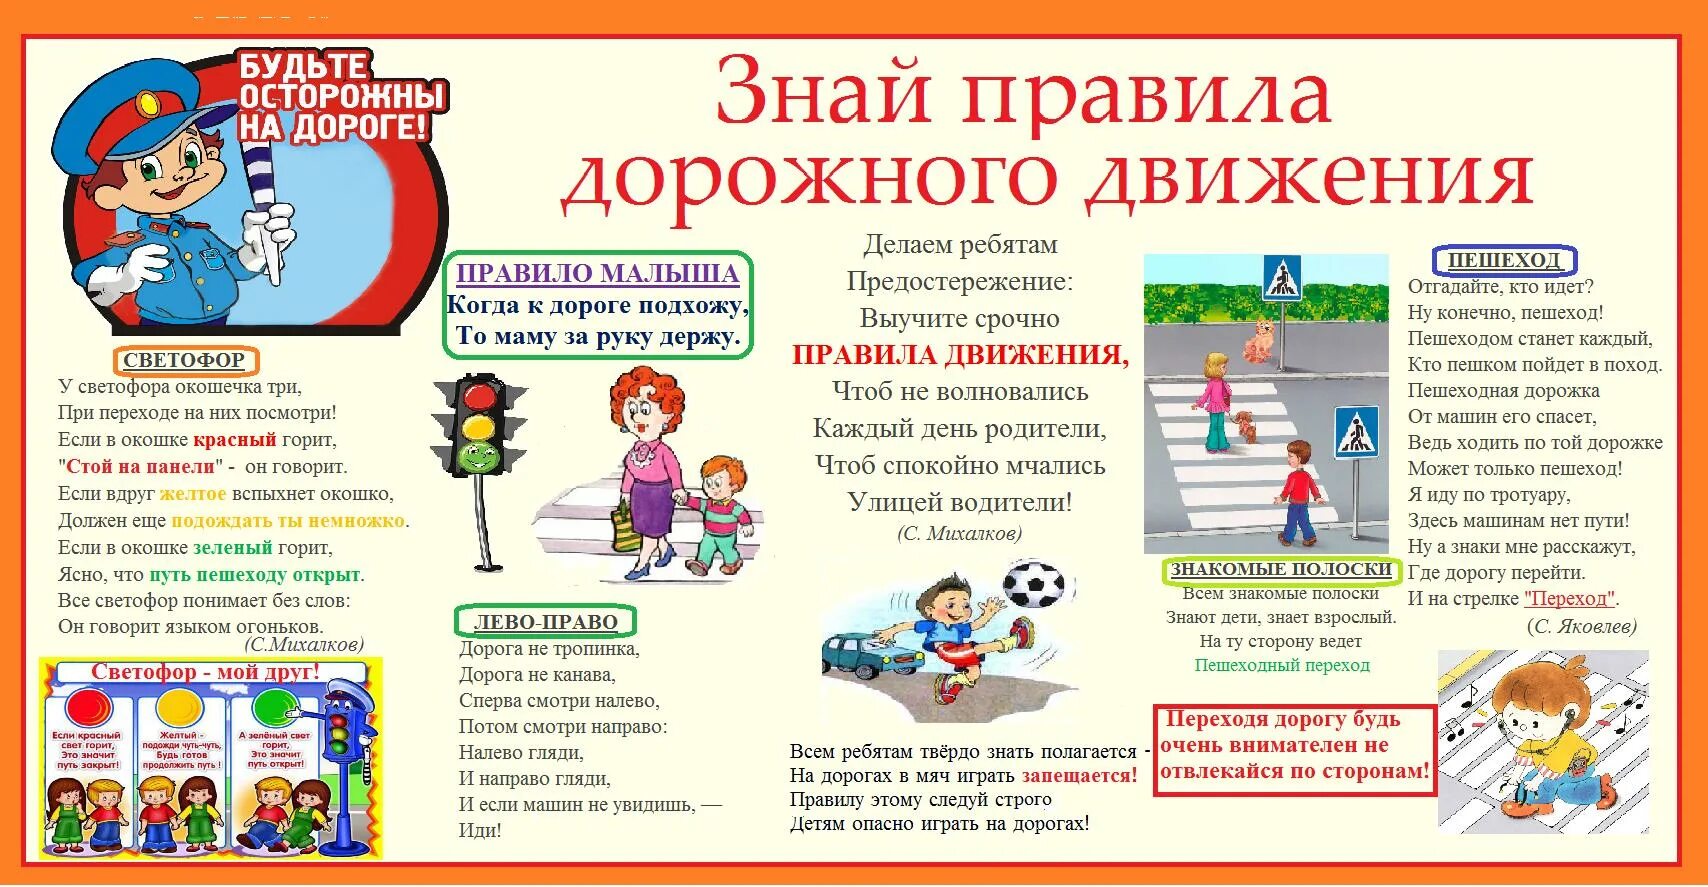 Обращение пешехода. Правила дорожного движения для детей. Плакат по правилам дорожного движения для школьников. Плакат по правилам дорожного движения для детей. ПДД правила дорожного движения.